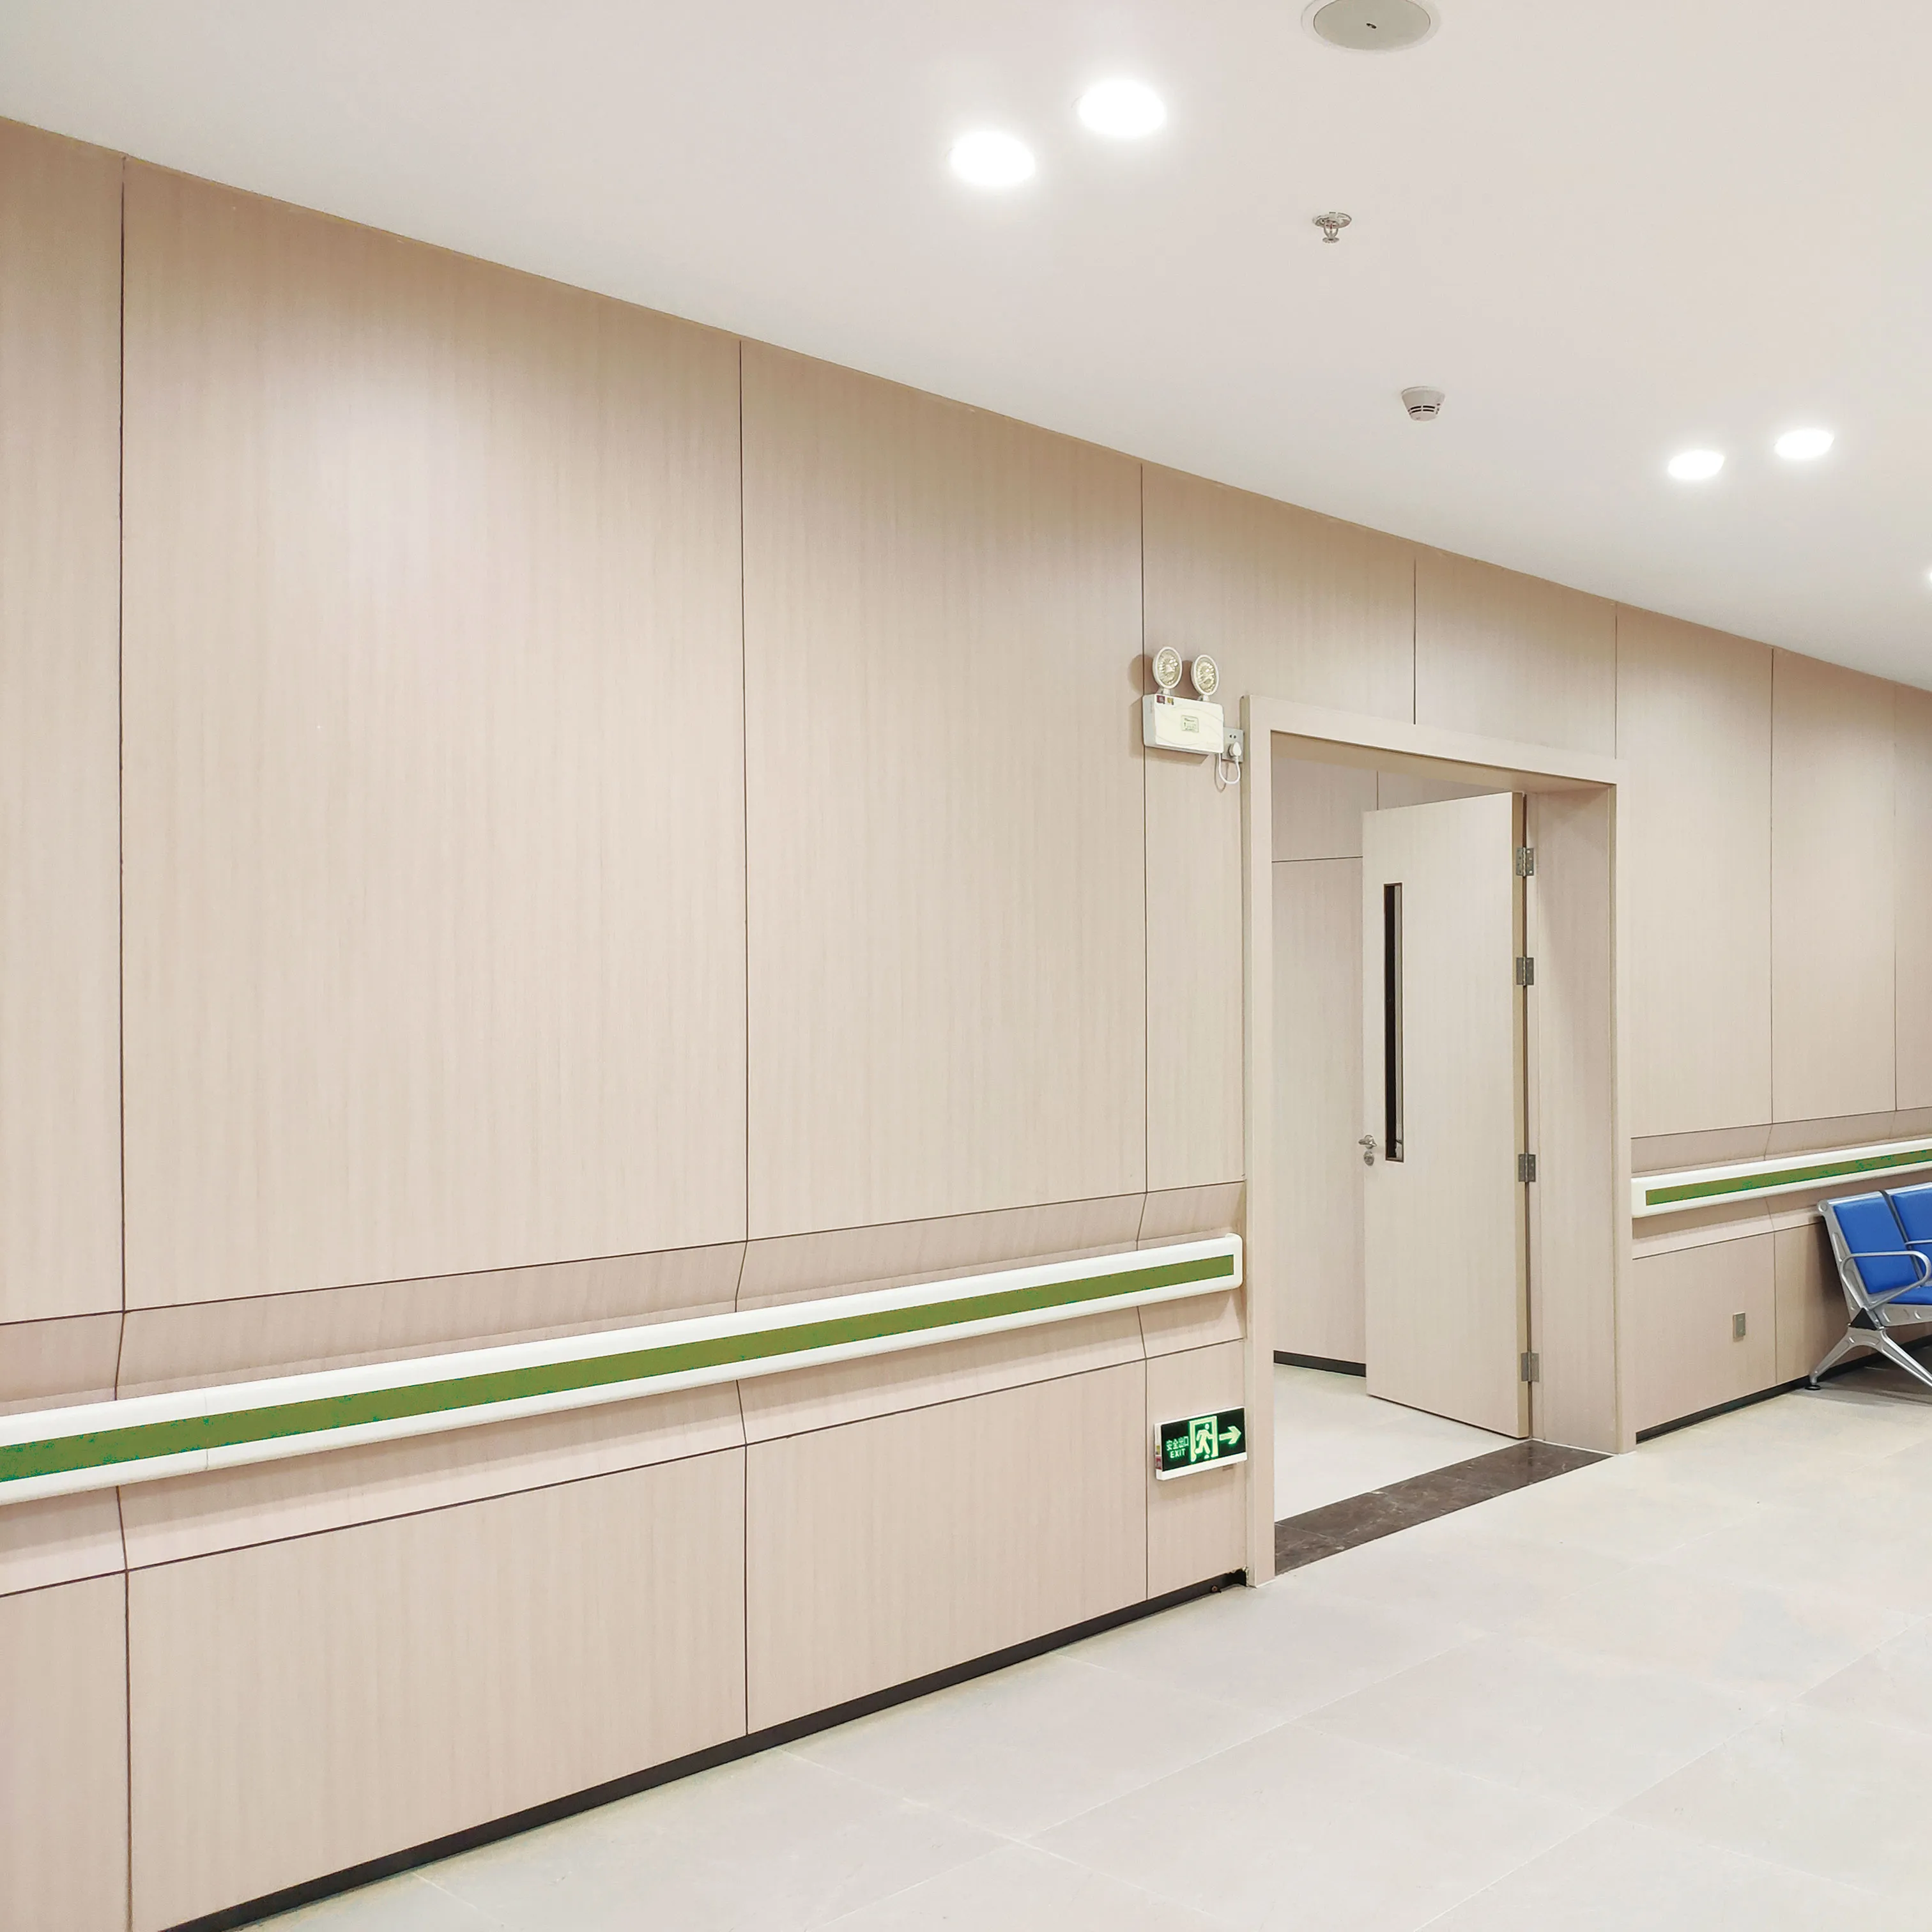 बैक्टीरियल नि: शुल्क और स्वच्छता उच्च दबाव टुकड़े टुकड़े अस्पताल एचपीएल दीवार Cladding